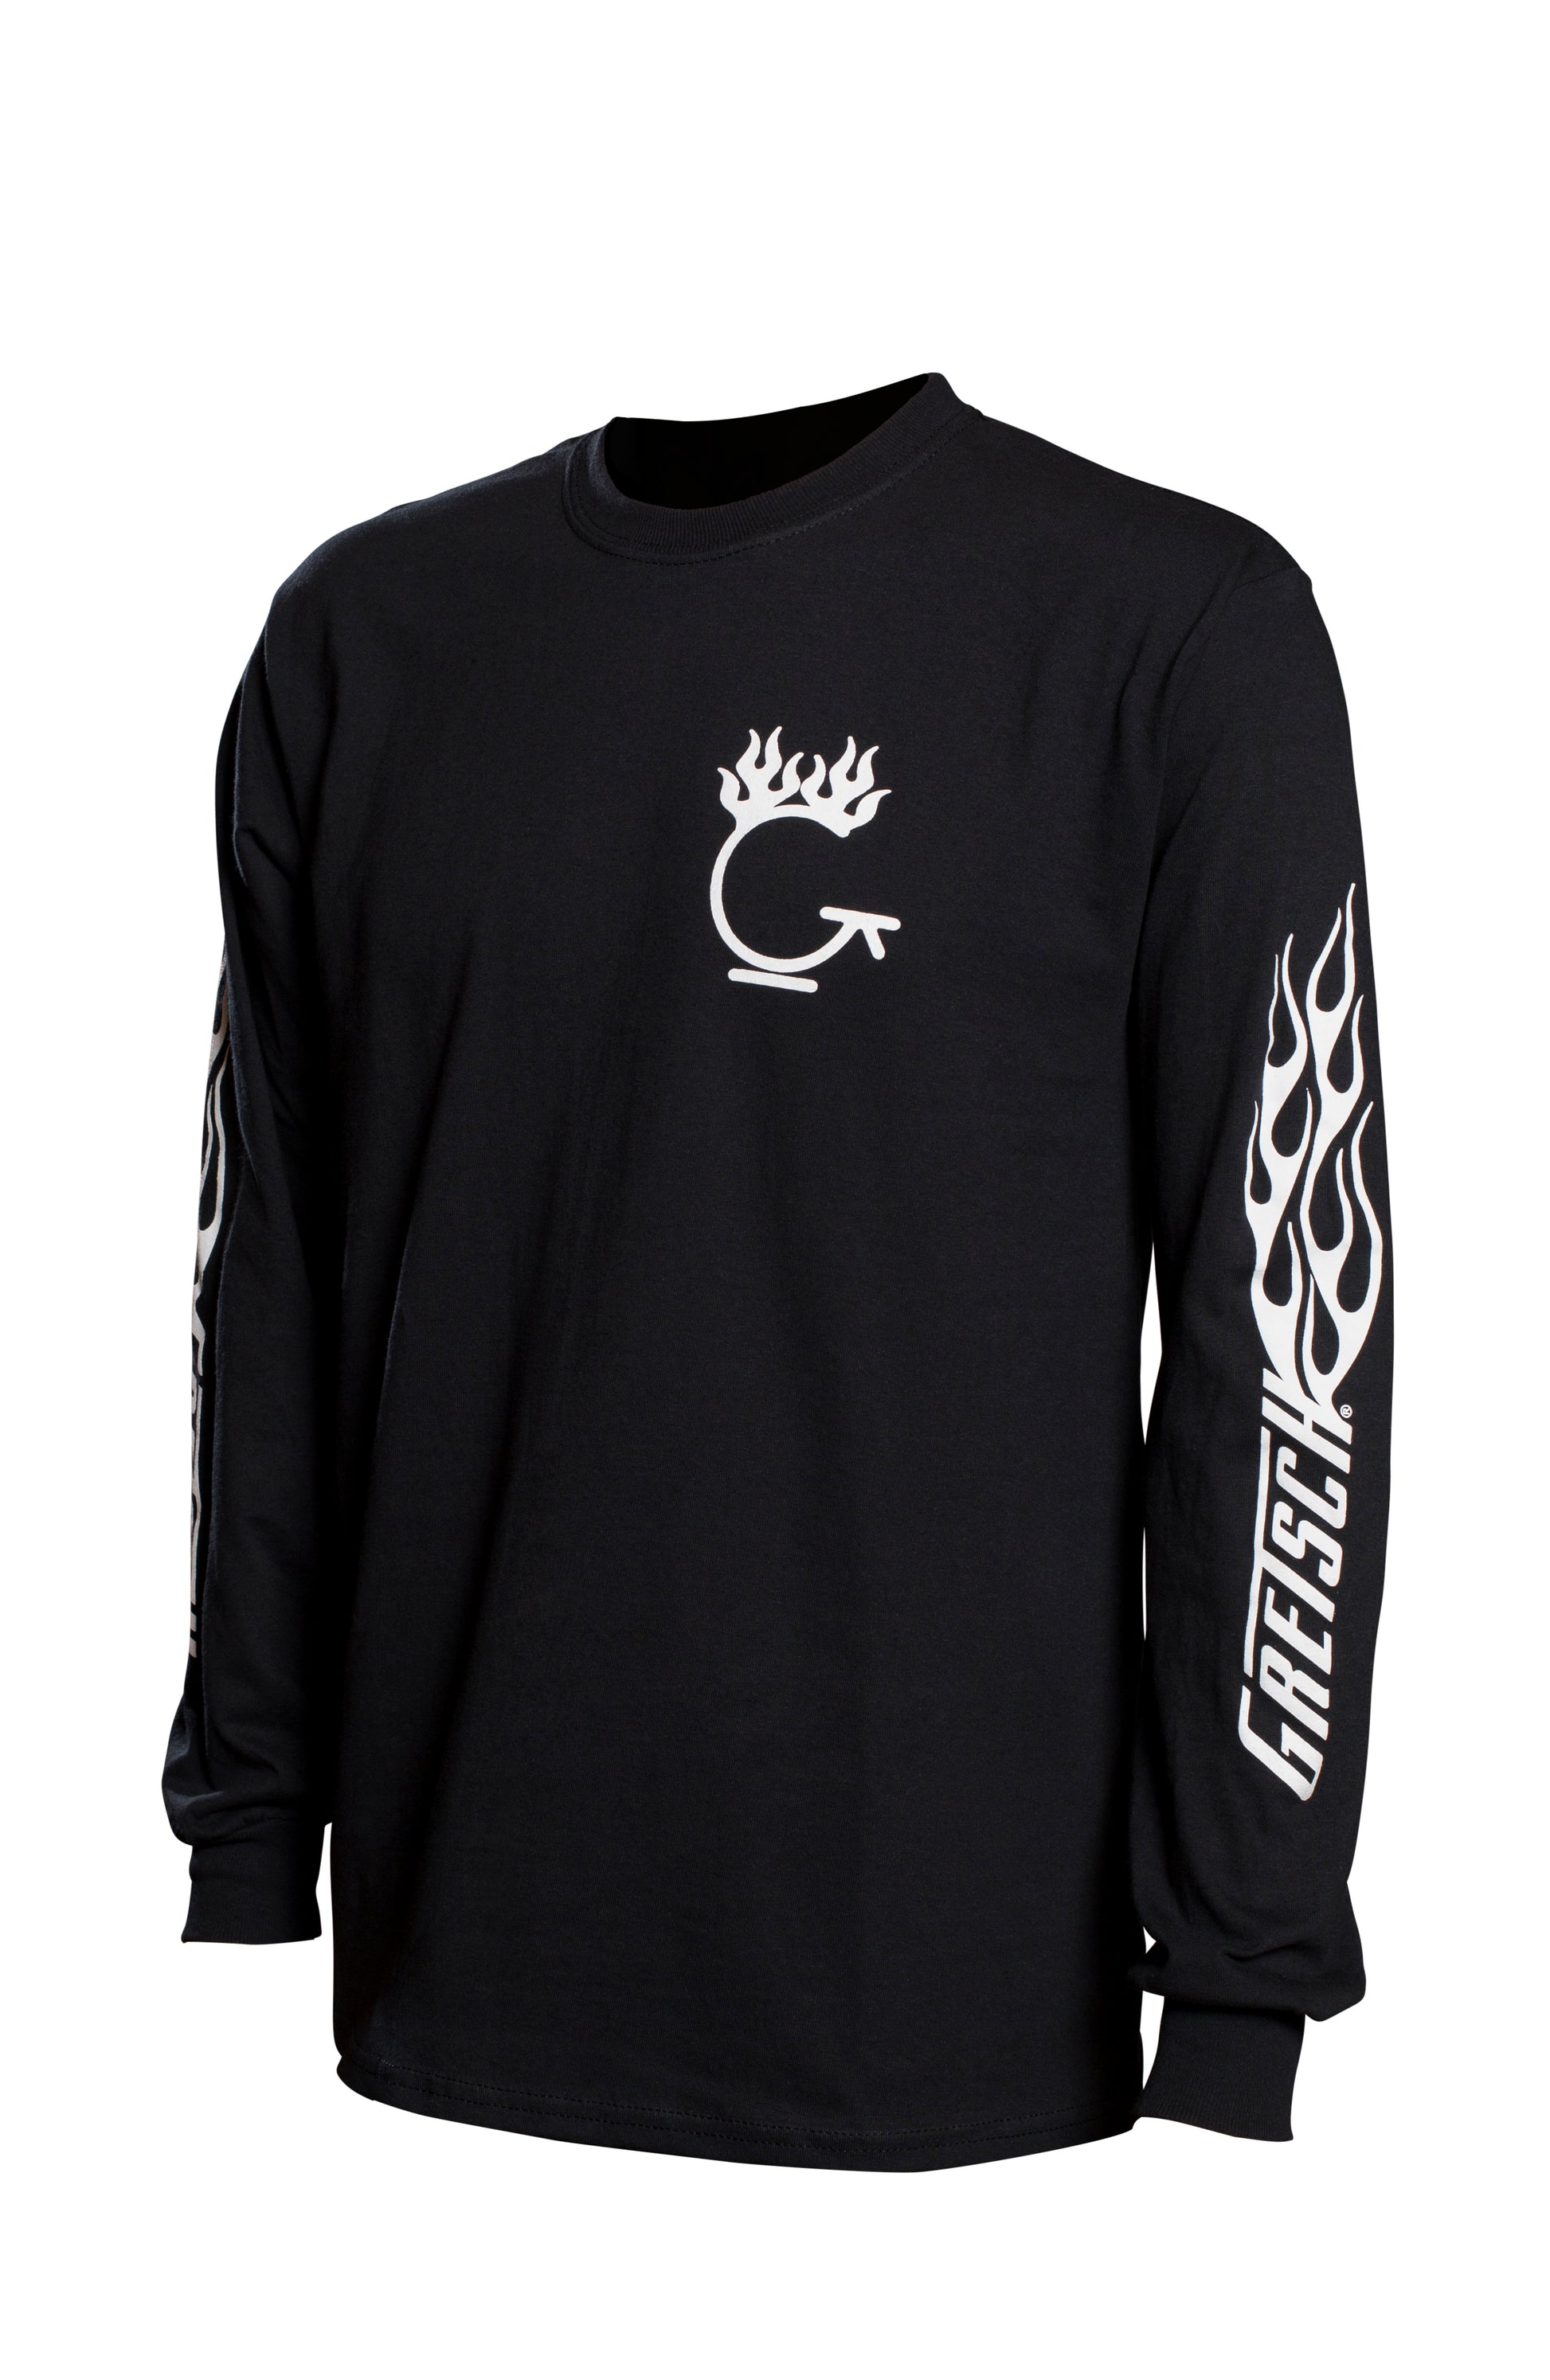 Gretsch Flame Long Sleeve T-Shirt - GretschGear